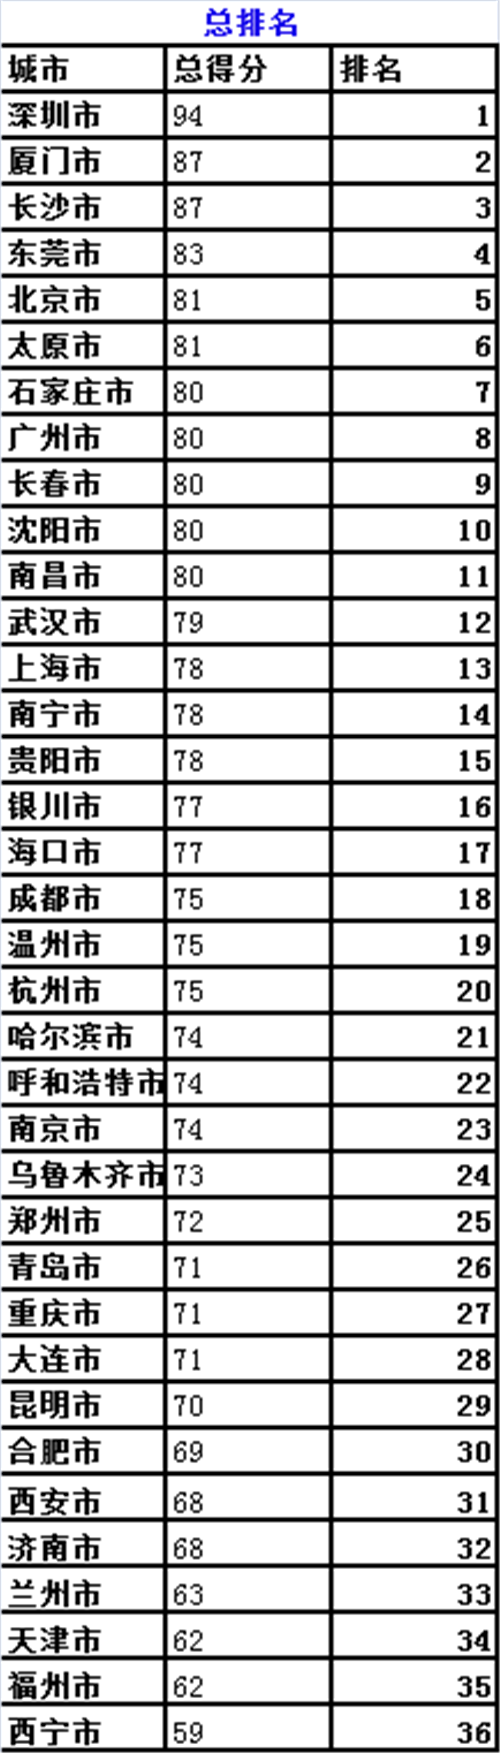 2016年中国城市便利店指数